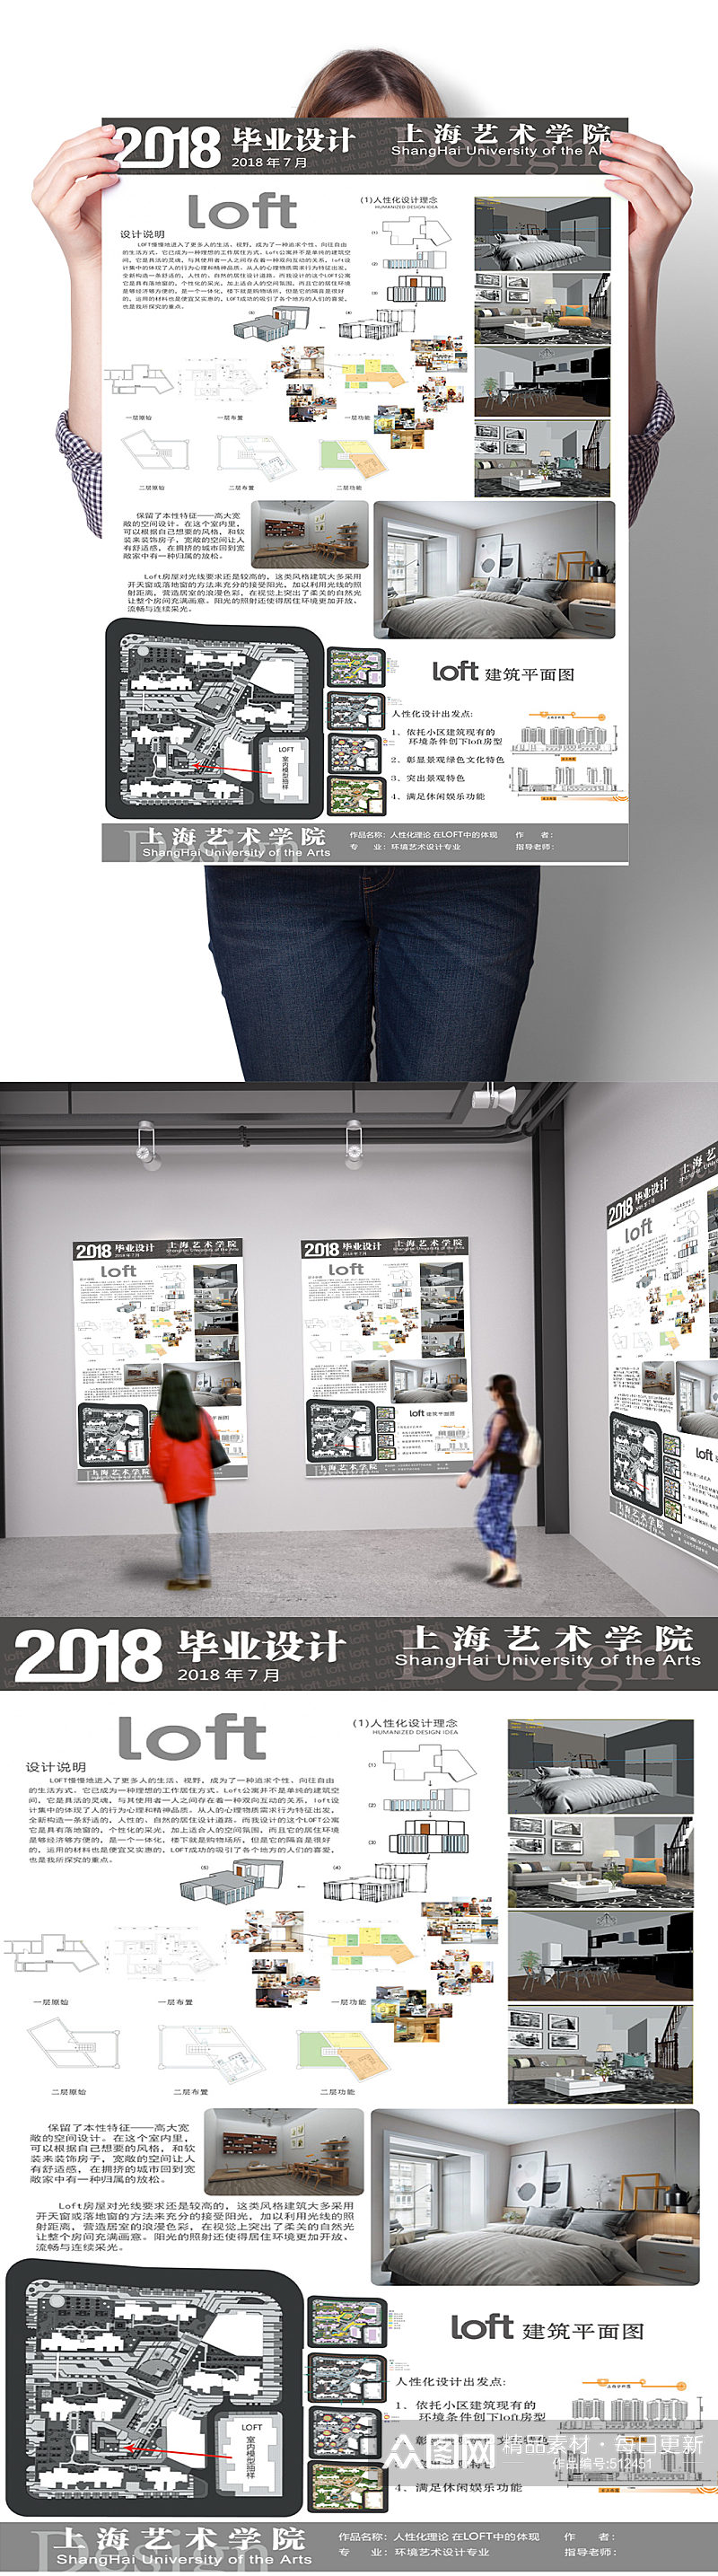 2020年复式楼建筑室内设计展示展板模板图片素材